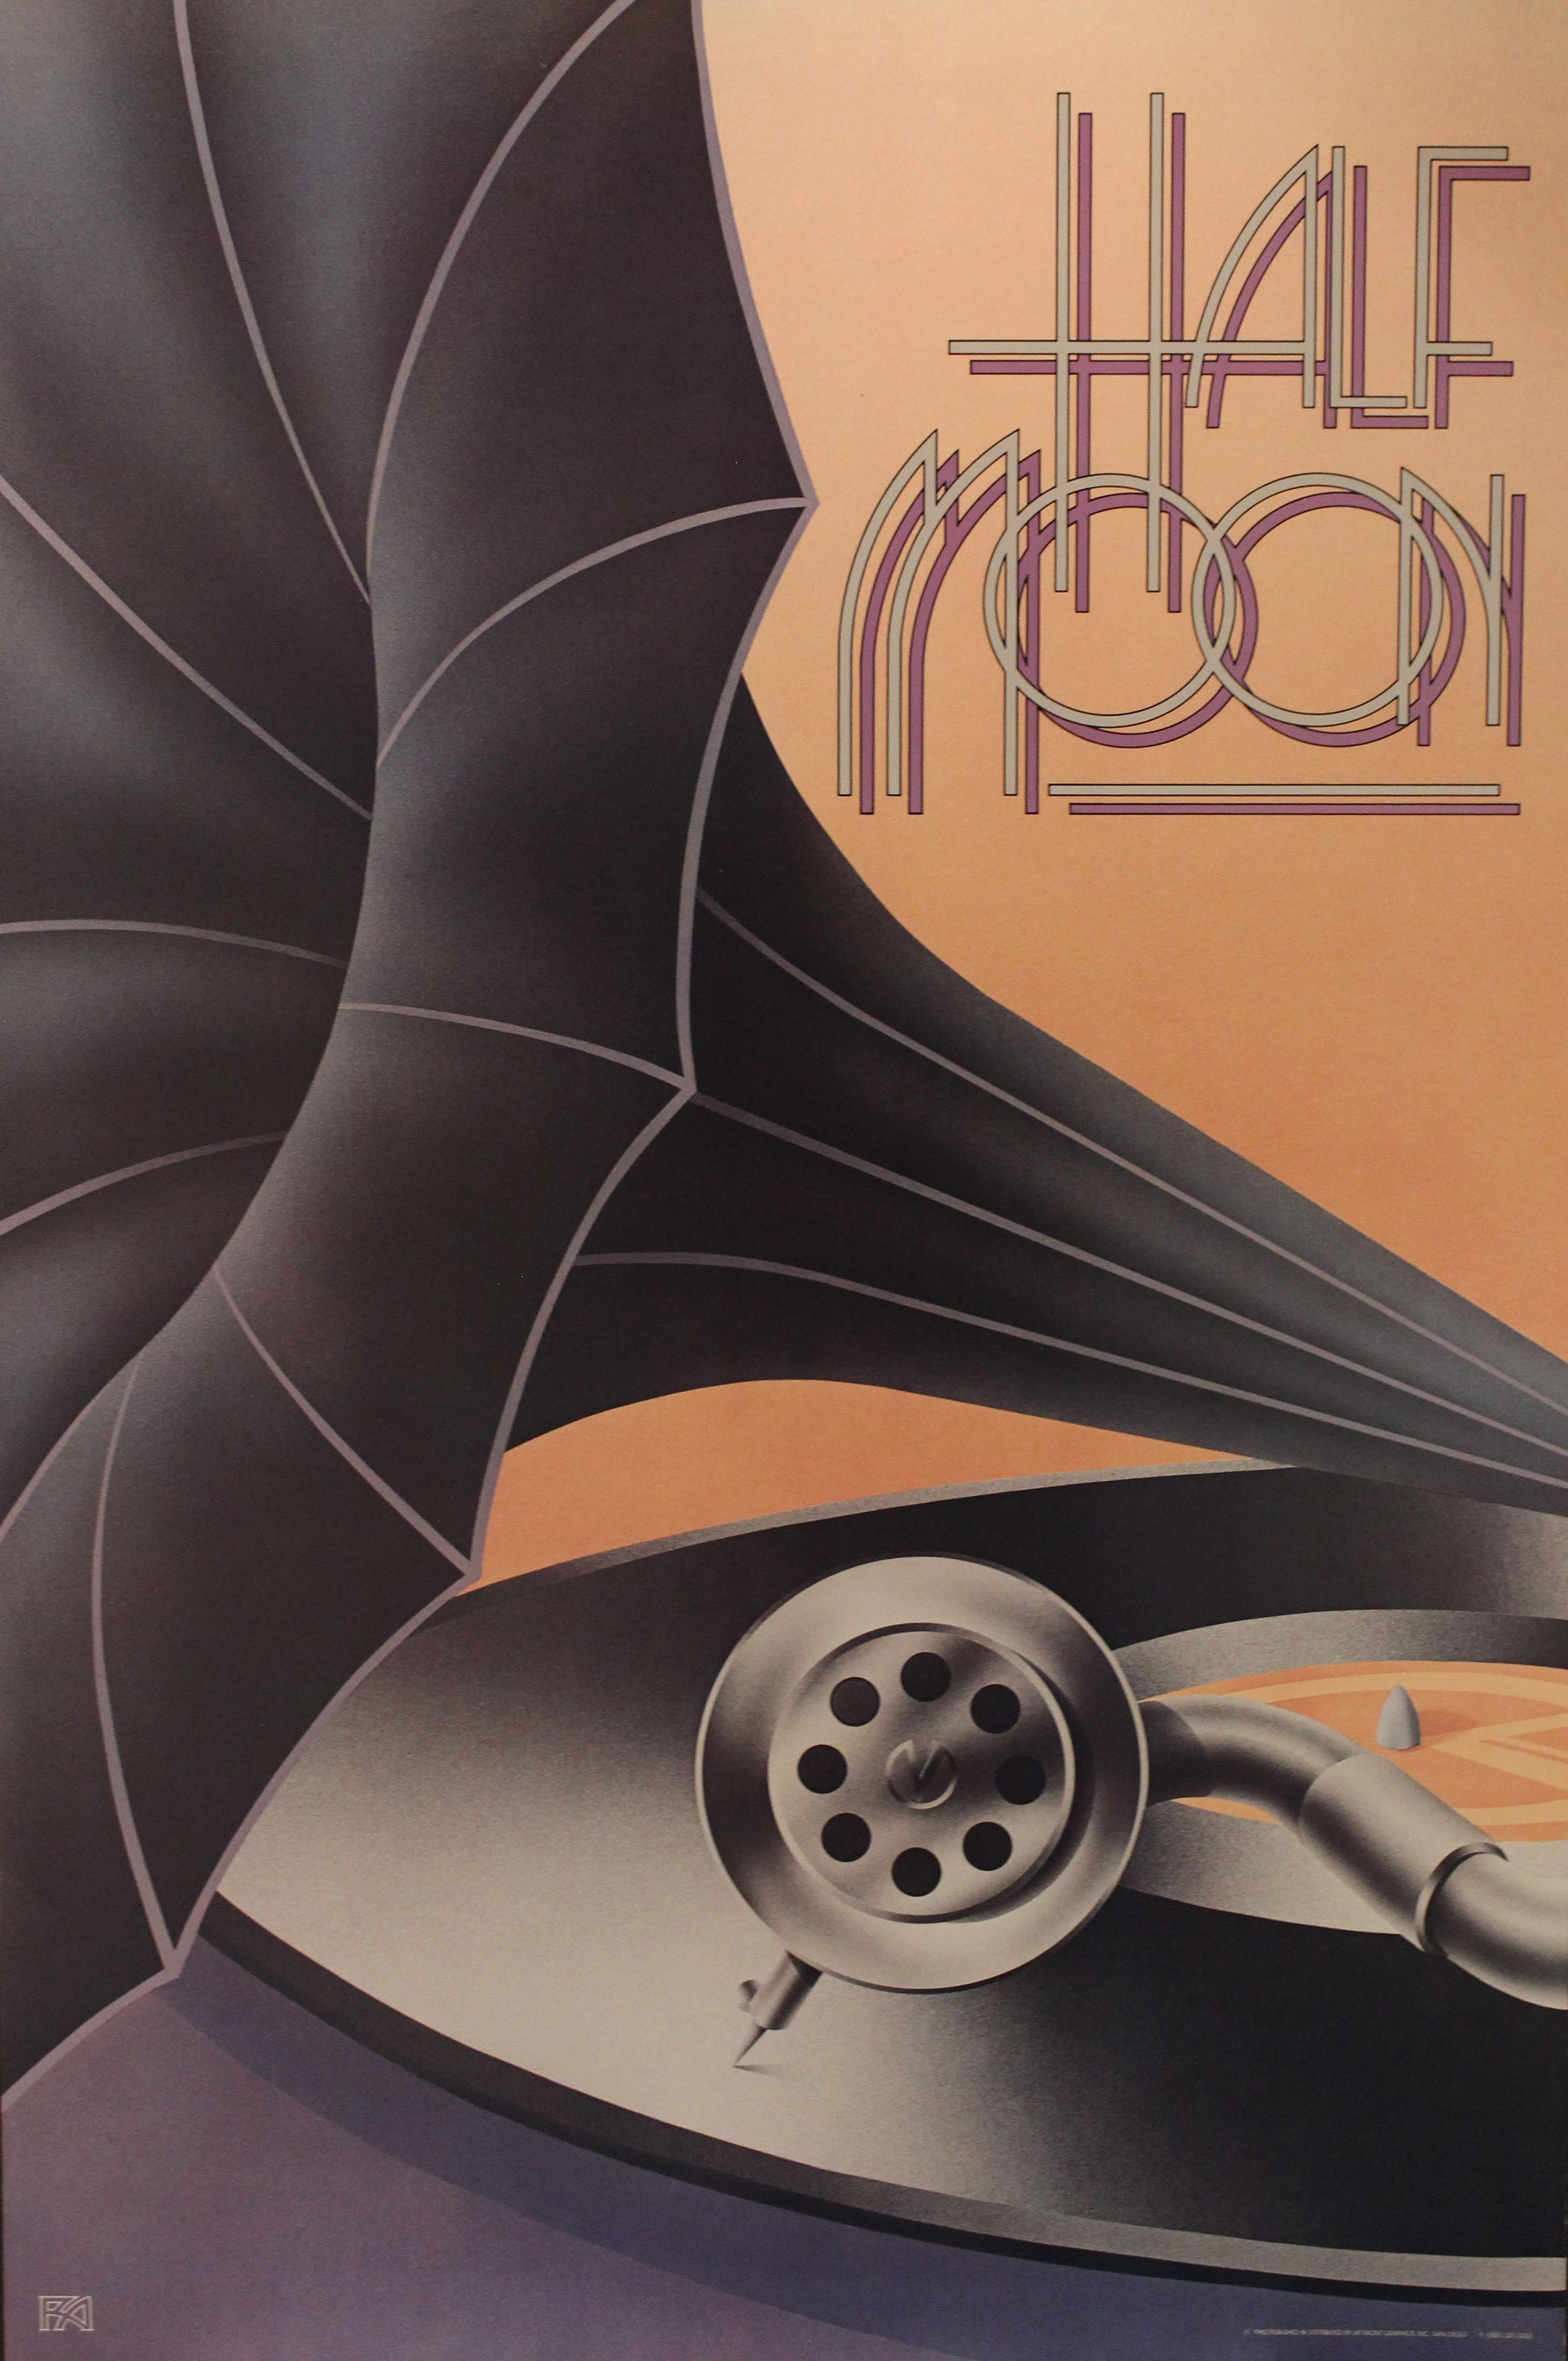 Unknown Print – Poster-Half Moon. 1982 Herausgegeben und vertrieben von Up Front Graphics, Inc. 